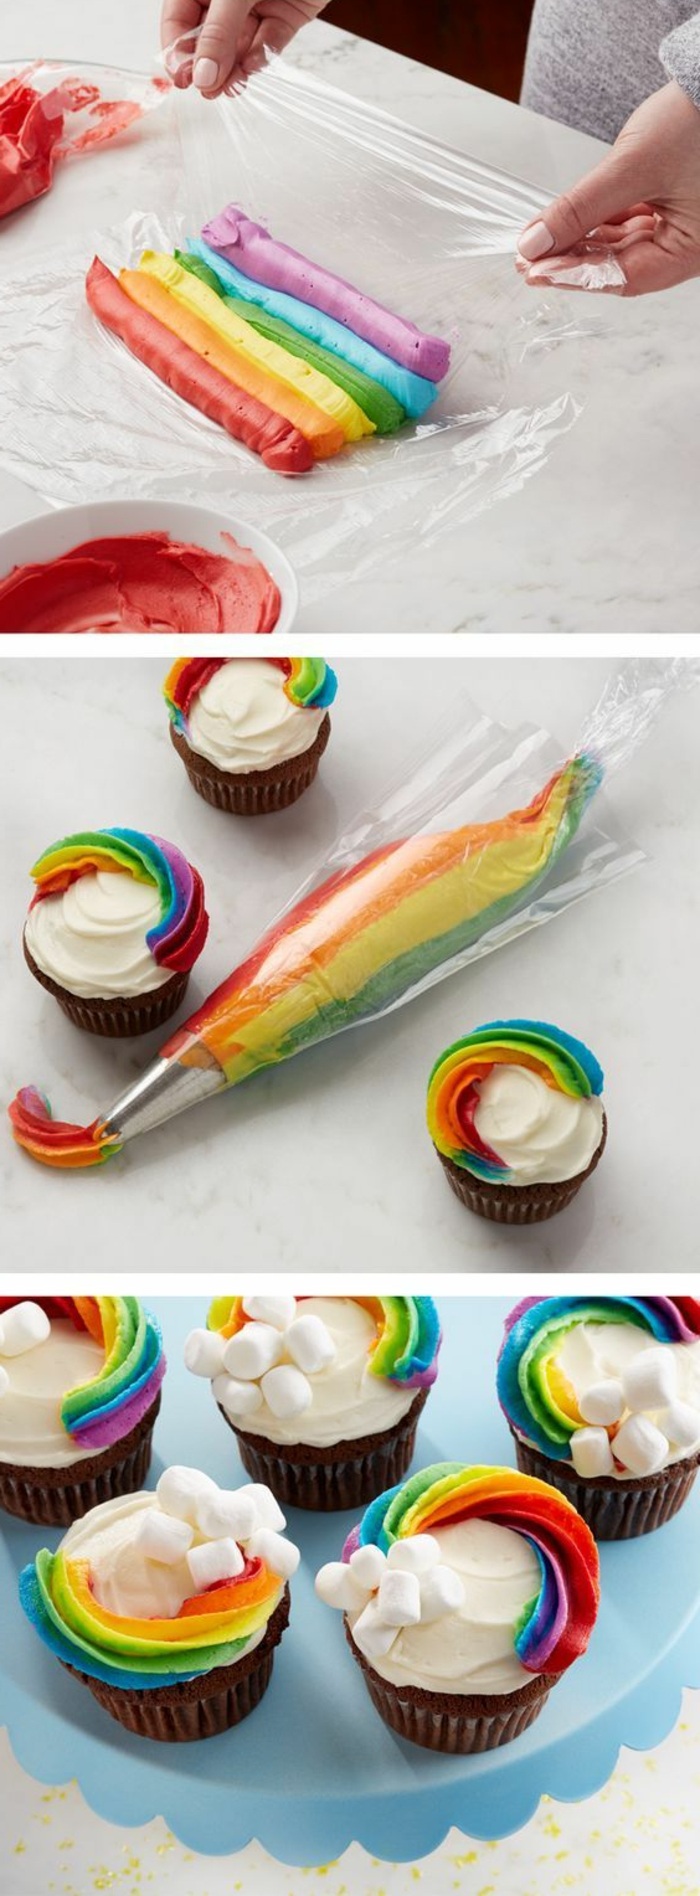 cupcakes dekorieren mit sahne in den farben des regenbogens